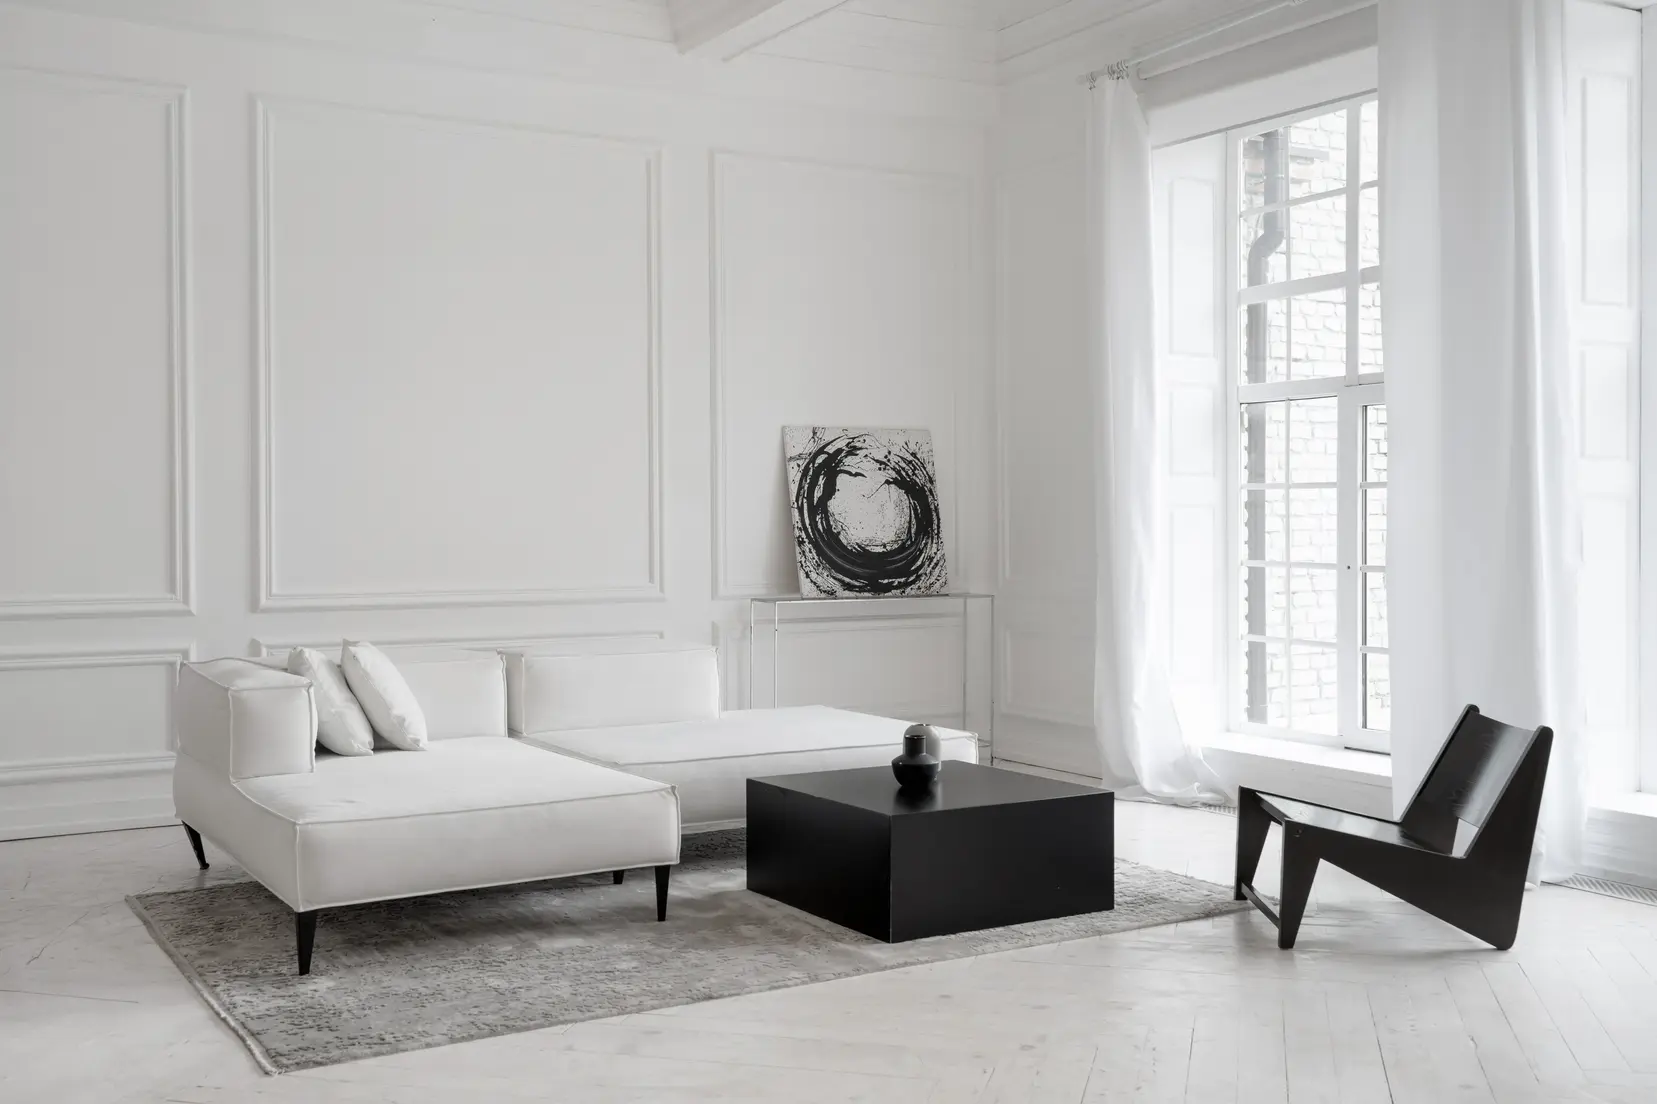 Salon w kolorze białym z białą kanapą, styl minimalistyczny. Element charakterystyczny: biała kanapa